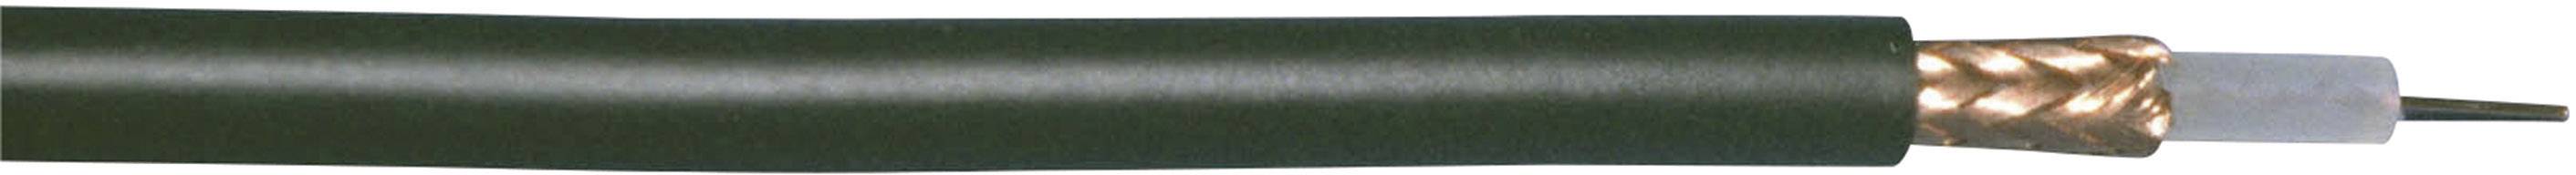 BEDEA Koaxialkabel Außen-Durchmesser: 4.95 mm RG58 50 ¿ Schwarz Bedea 10840911 Meterware